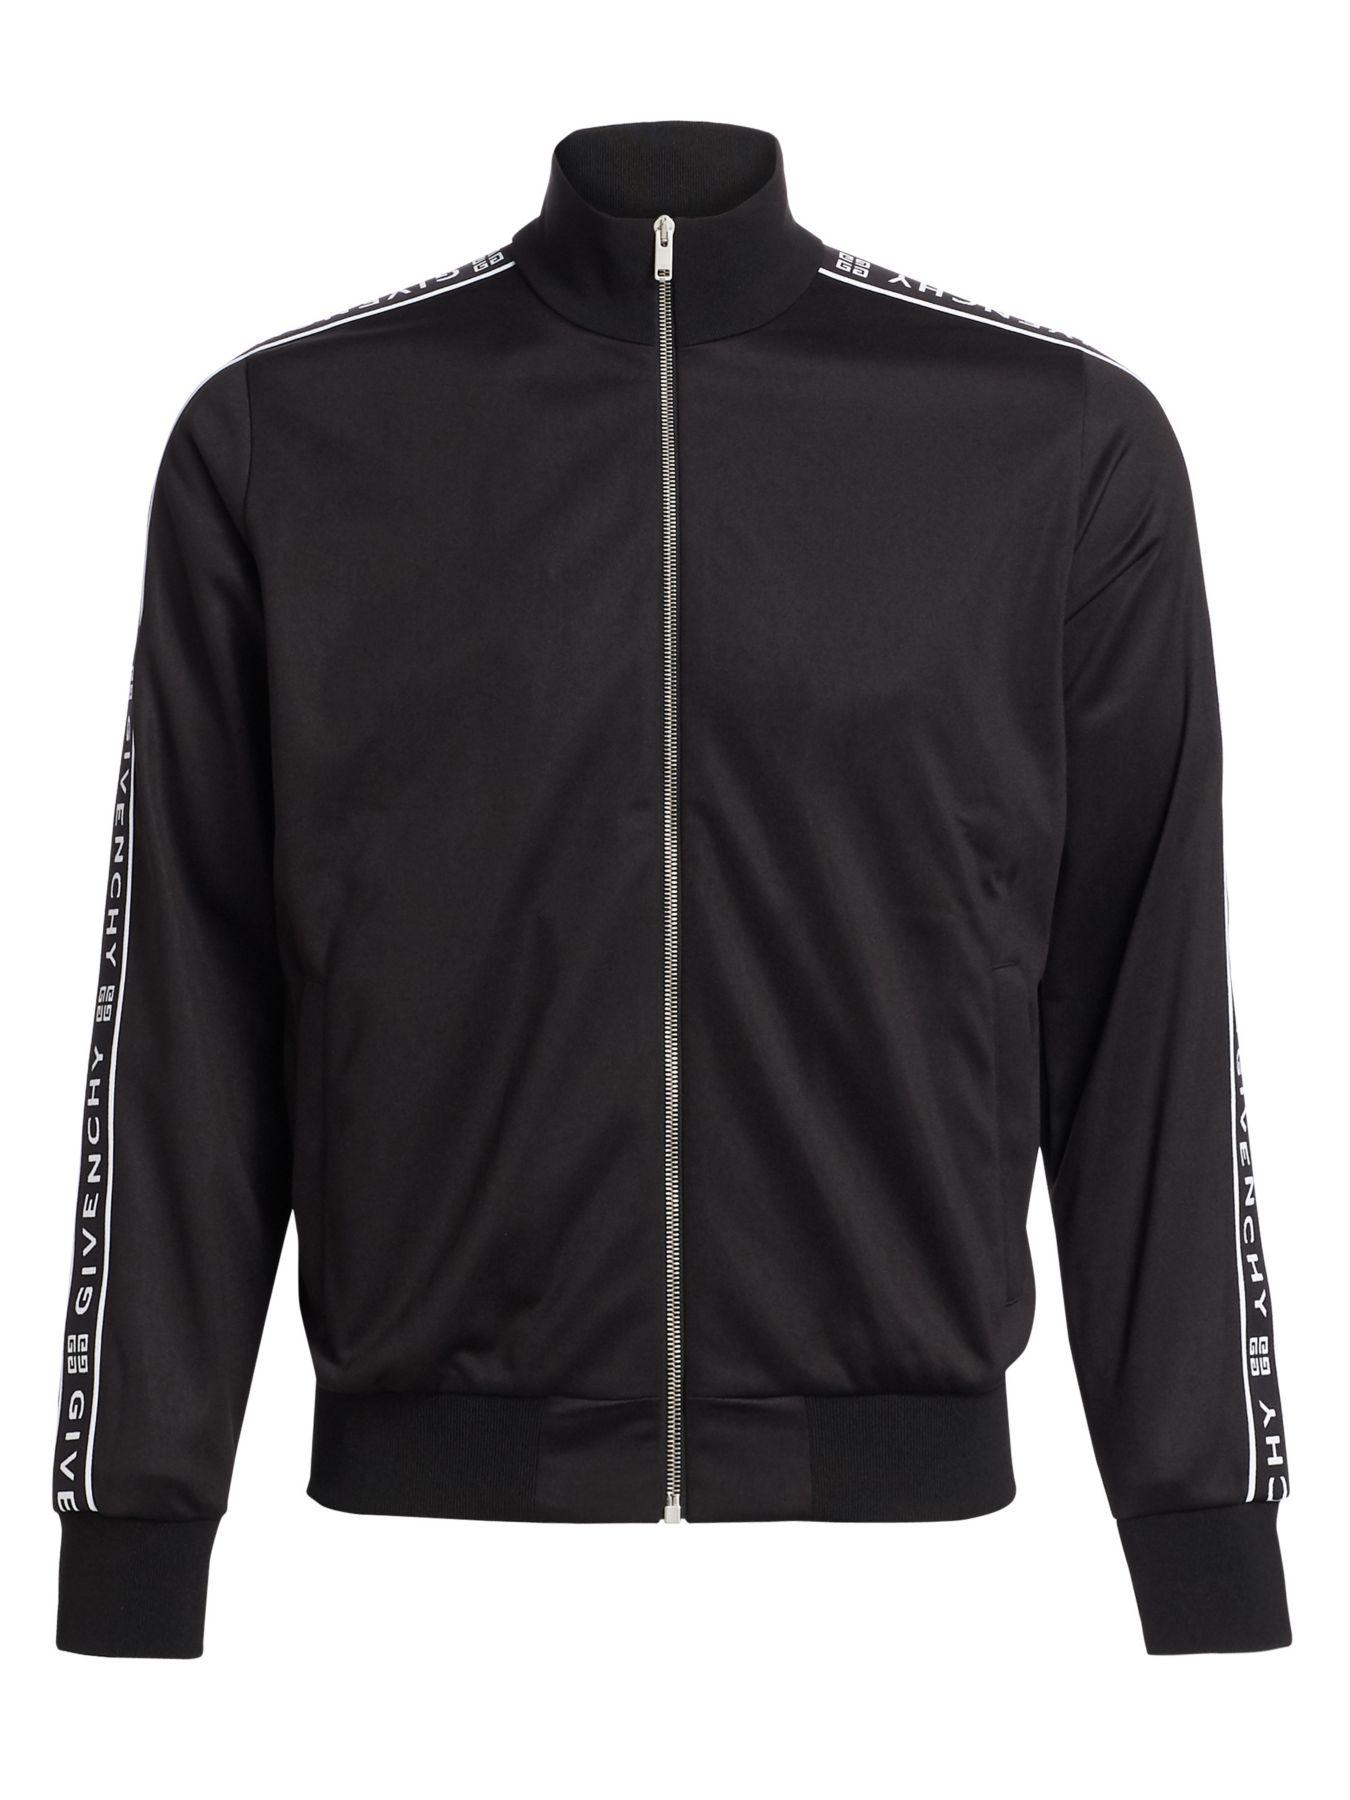 Givenchy Side-tape Logo Track Jacket in Black for Men - Lyst